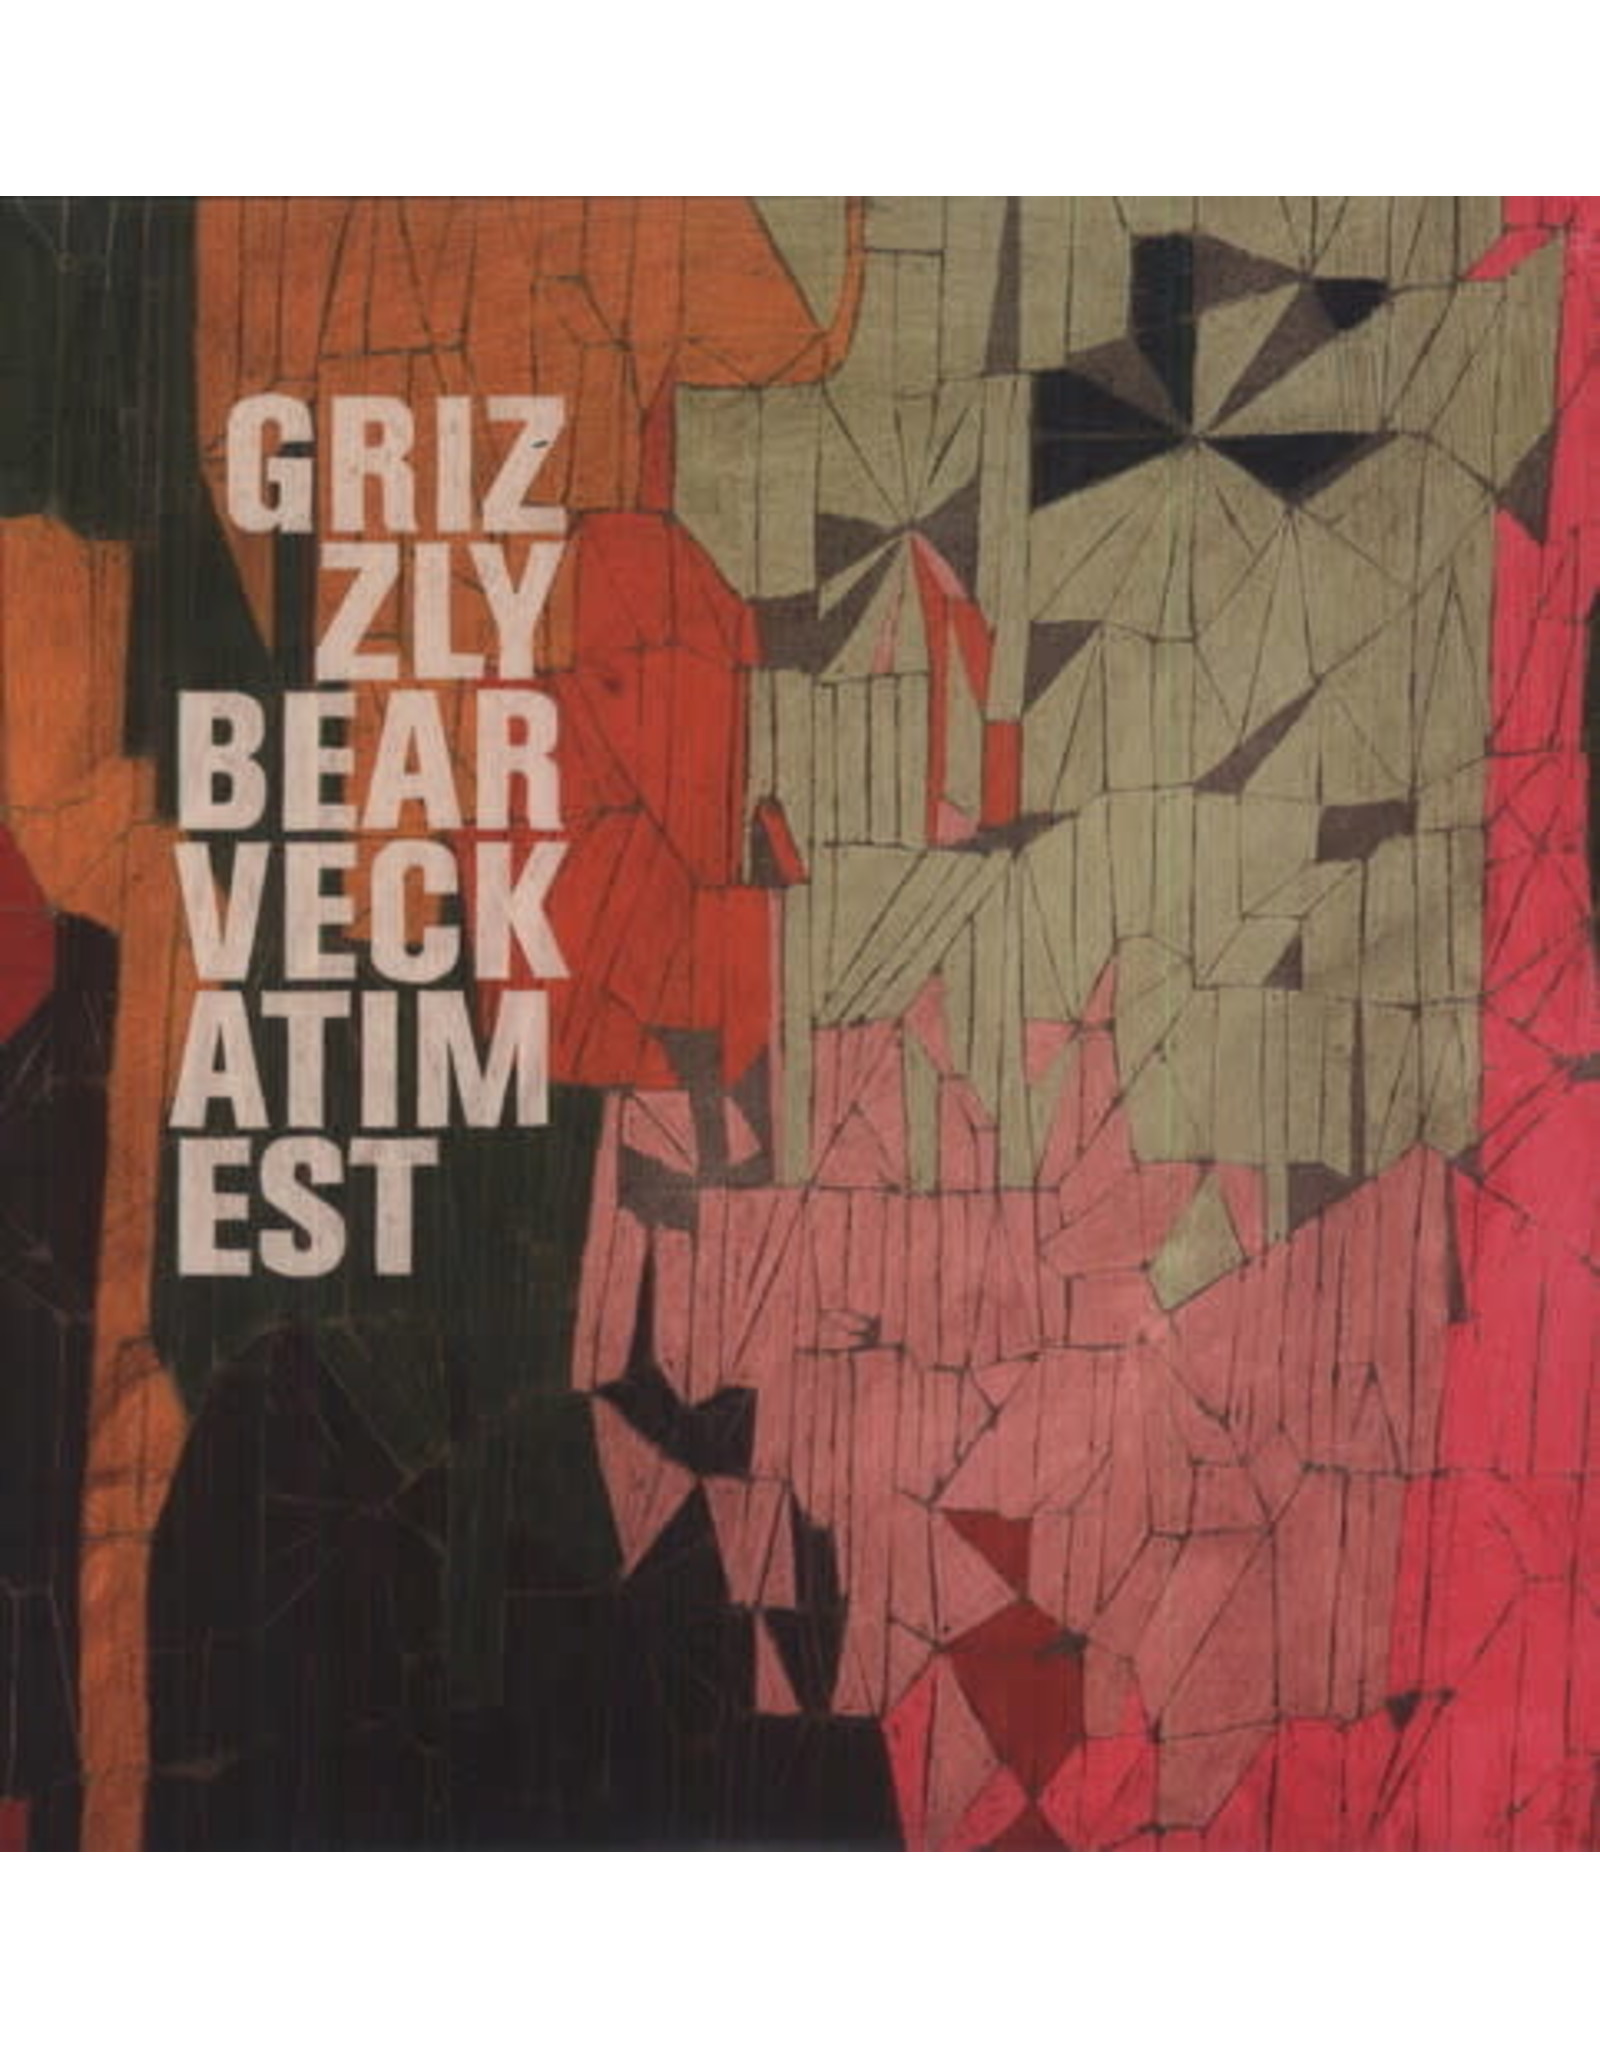 New Vinyl Grizzly Bear - Veckatimest 2LP